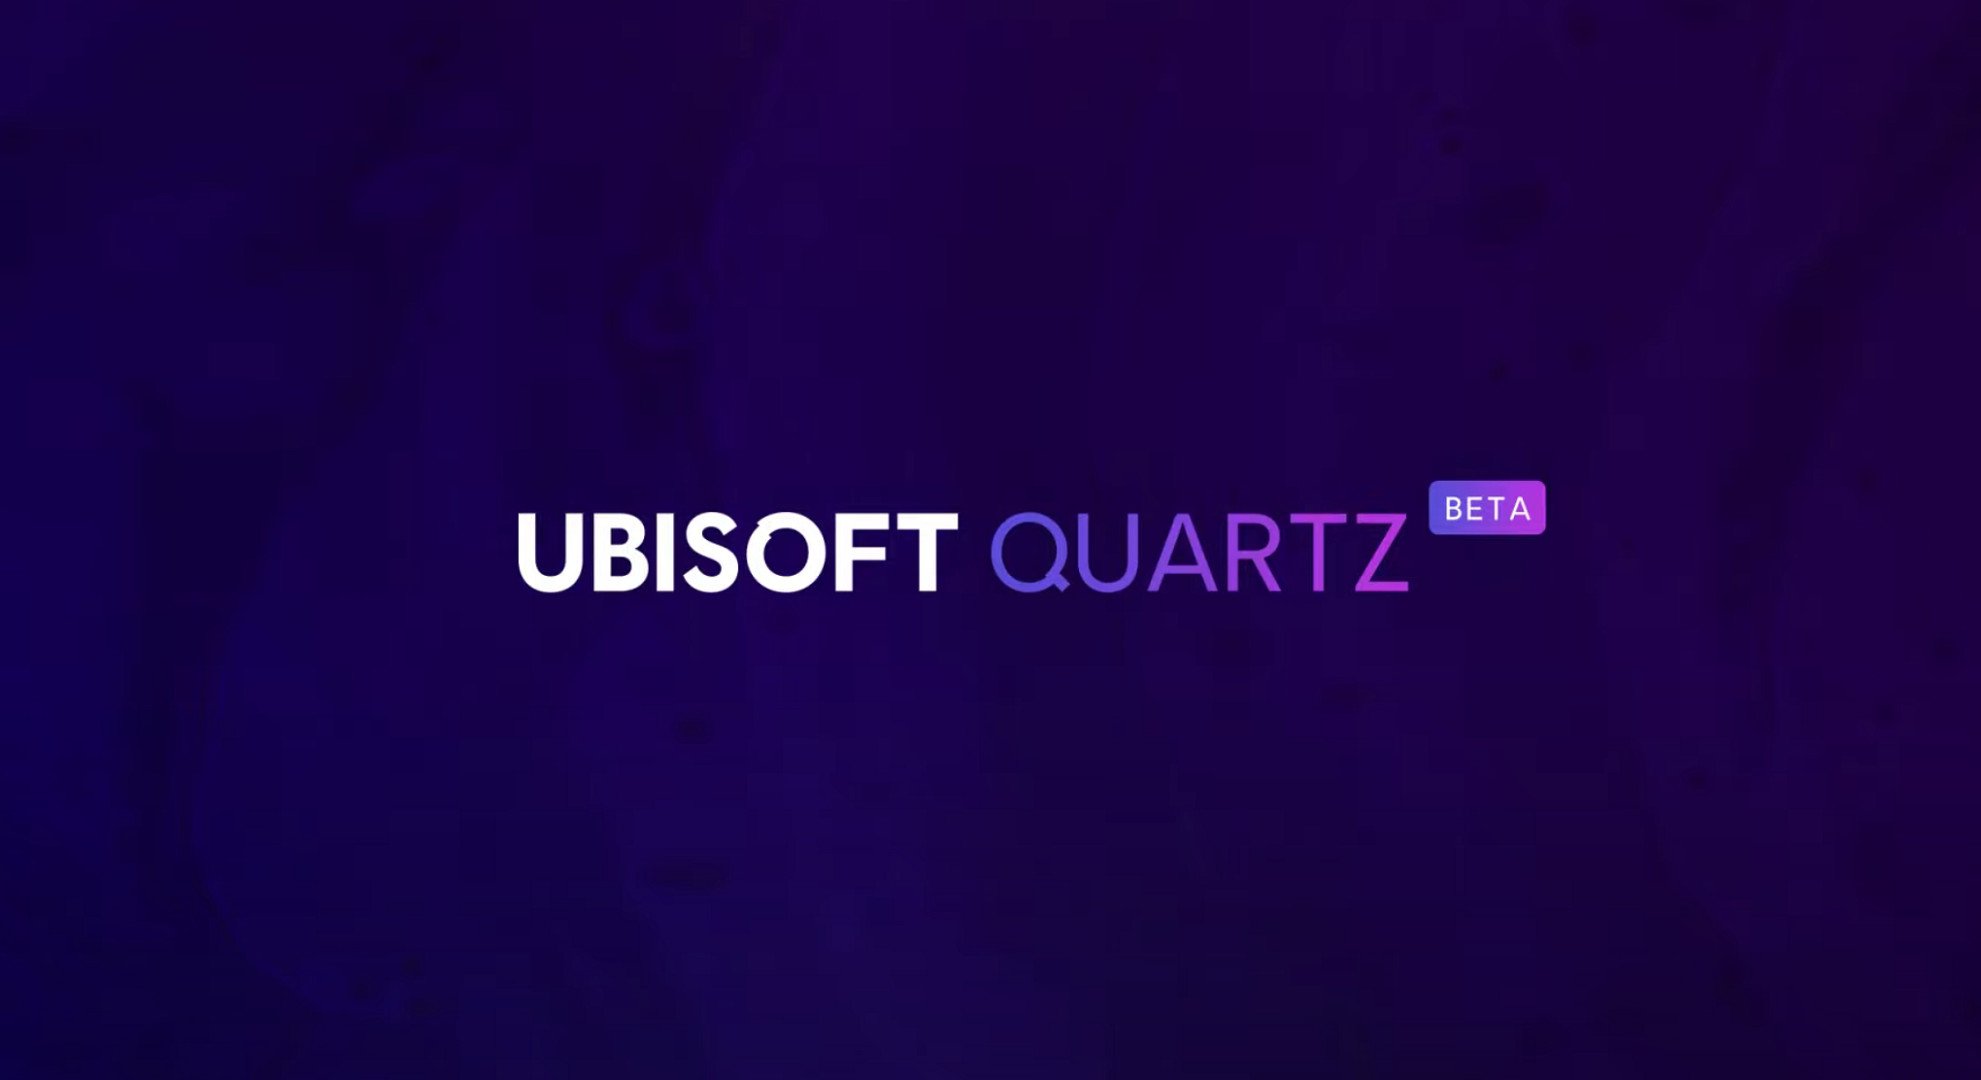 Ubisoft Quartz logo